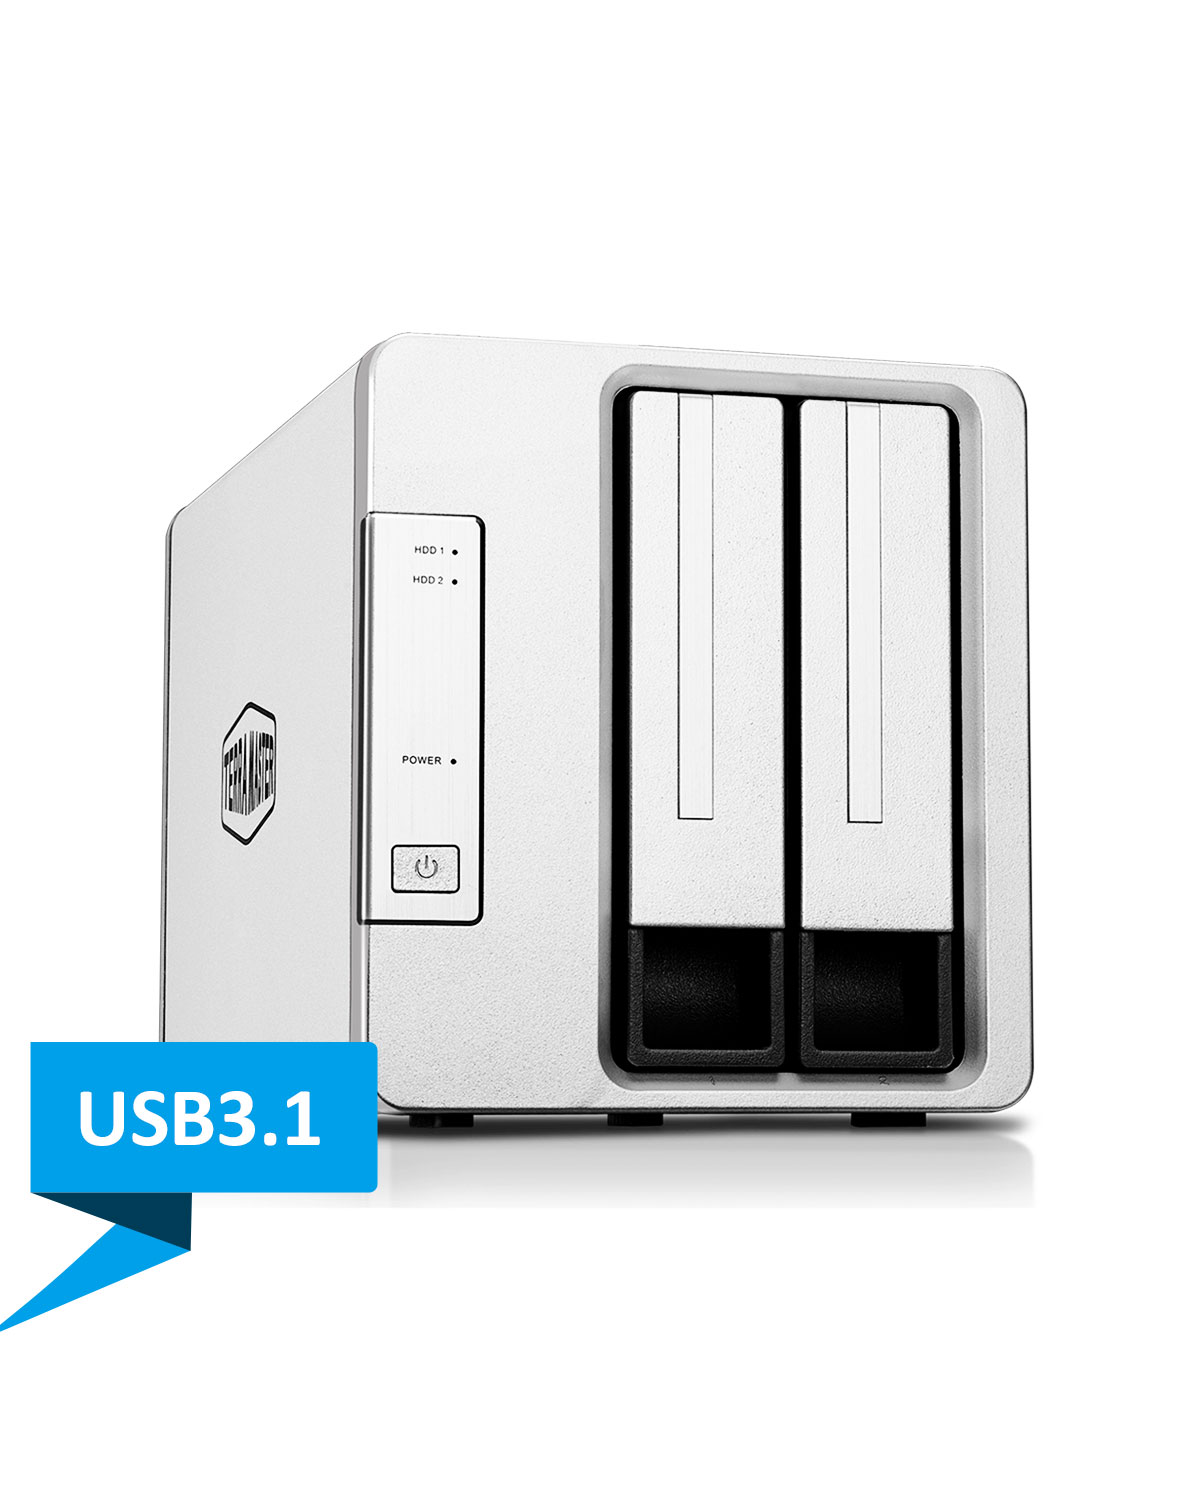 Thiết bị lưu trữ DAS TerraMaster D2-310 USB 3.1 Type-C - 2 khay ổ cứng Hàng chính hãng